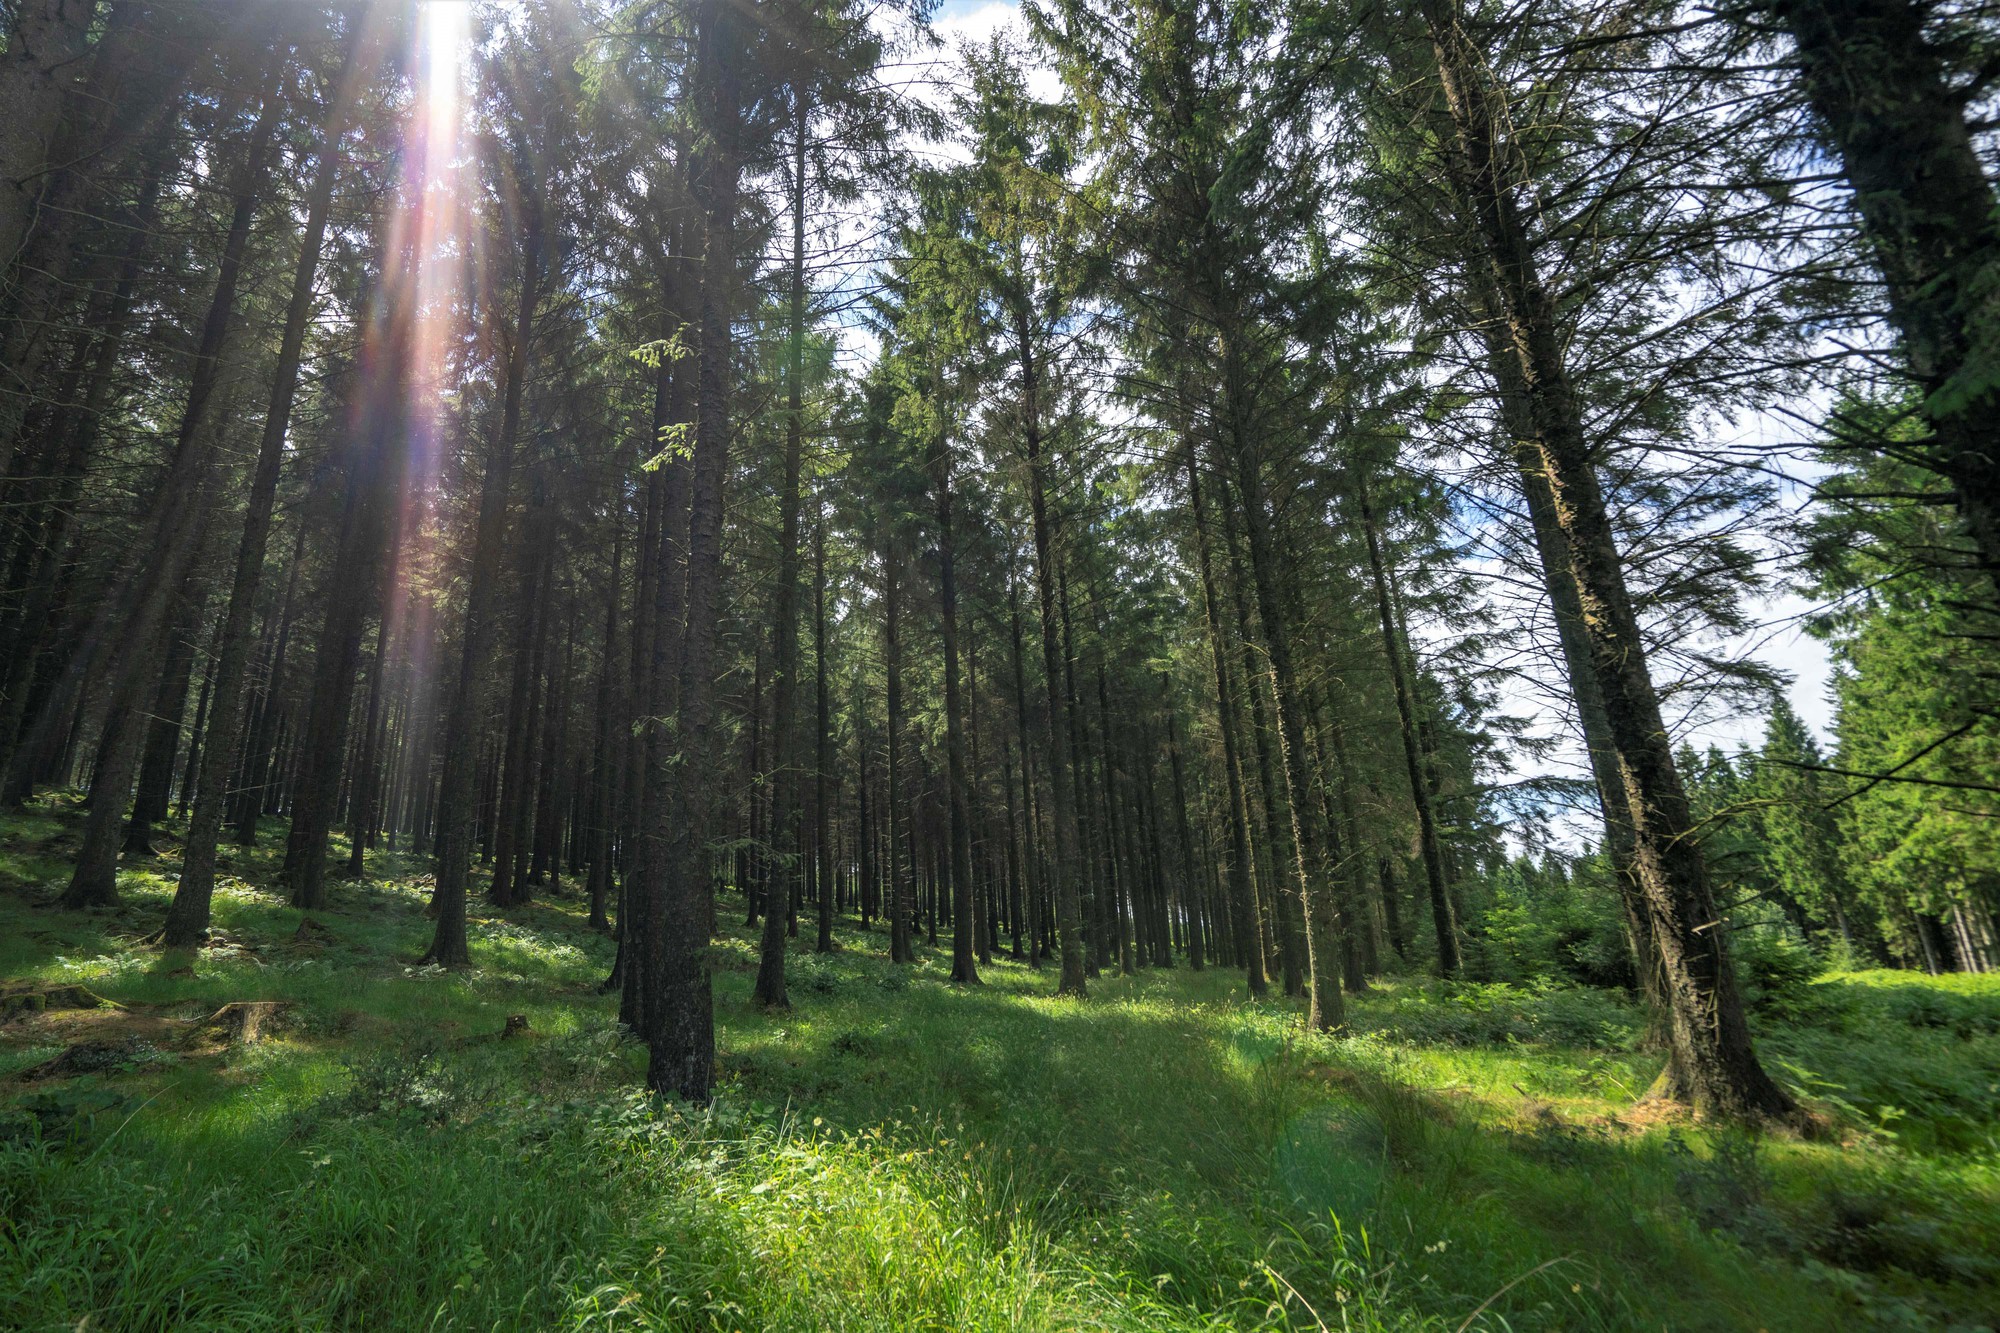 Đầu tư 400 triệu USD phục hồi rừng vì lợi ích sức khỏe con người và ứng phó với biến đổi khí hậu